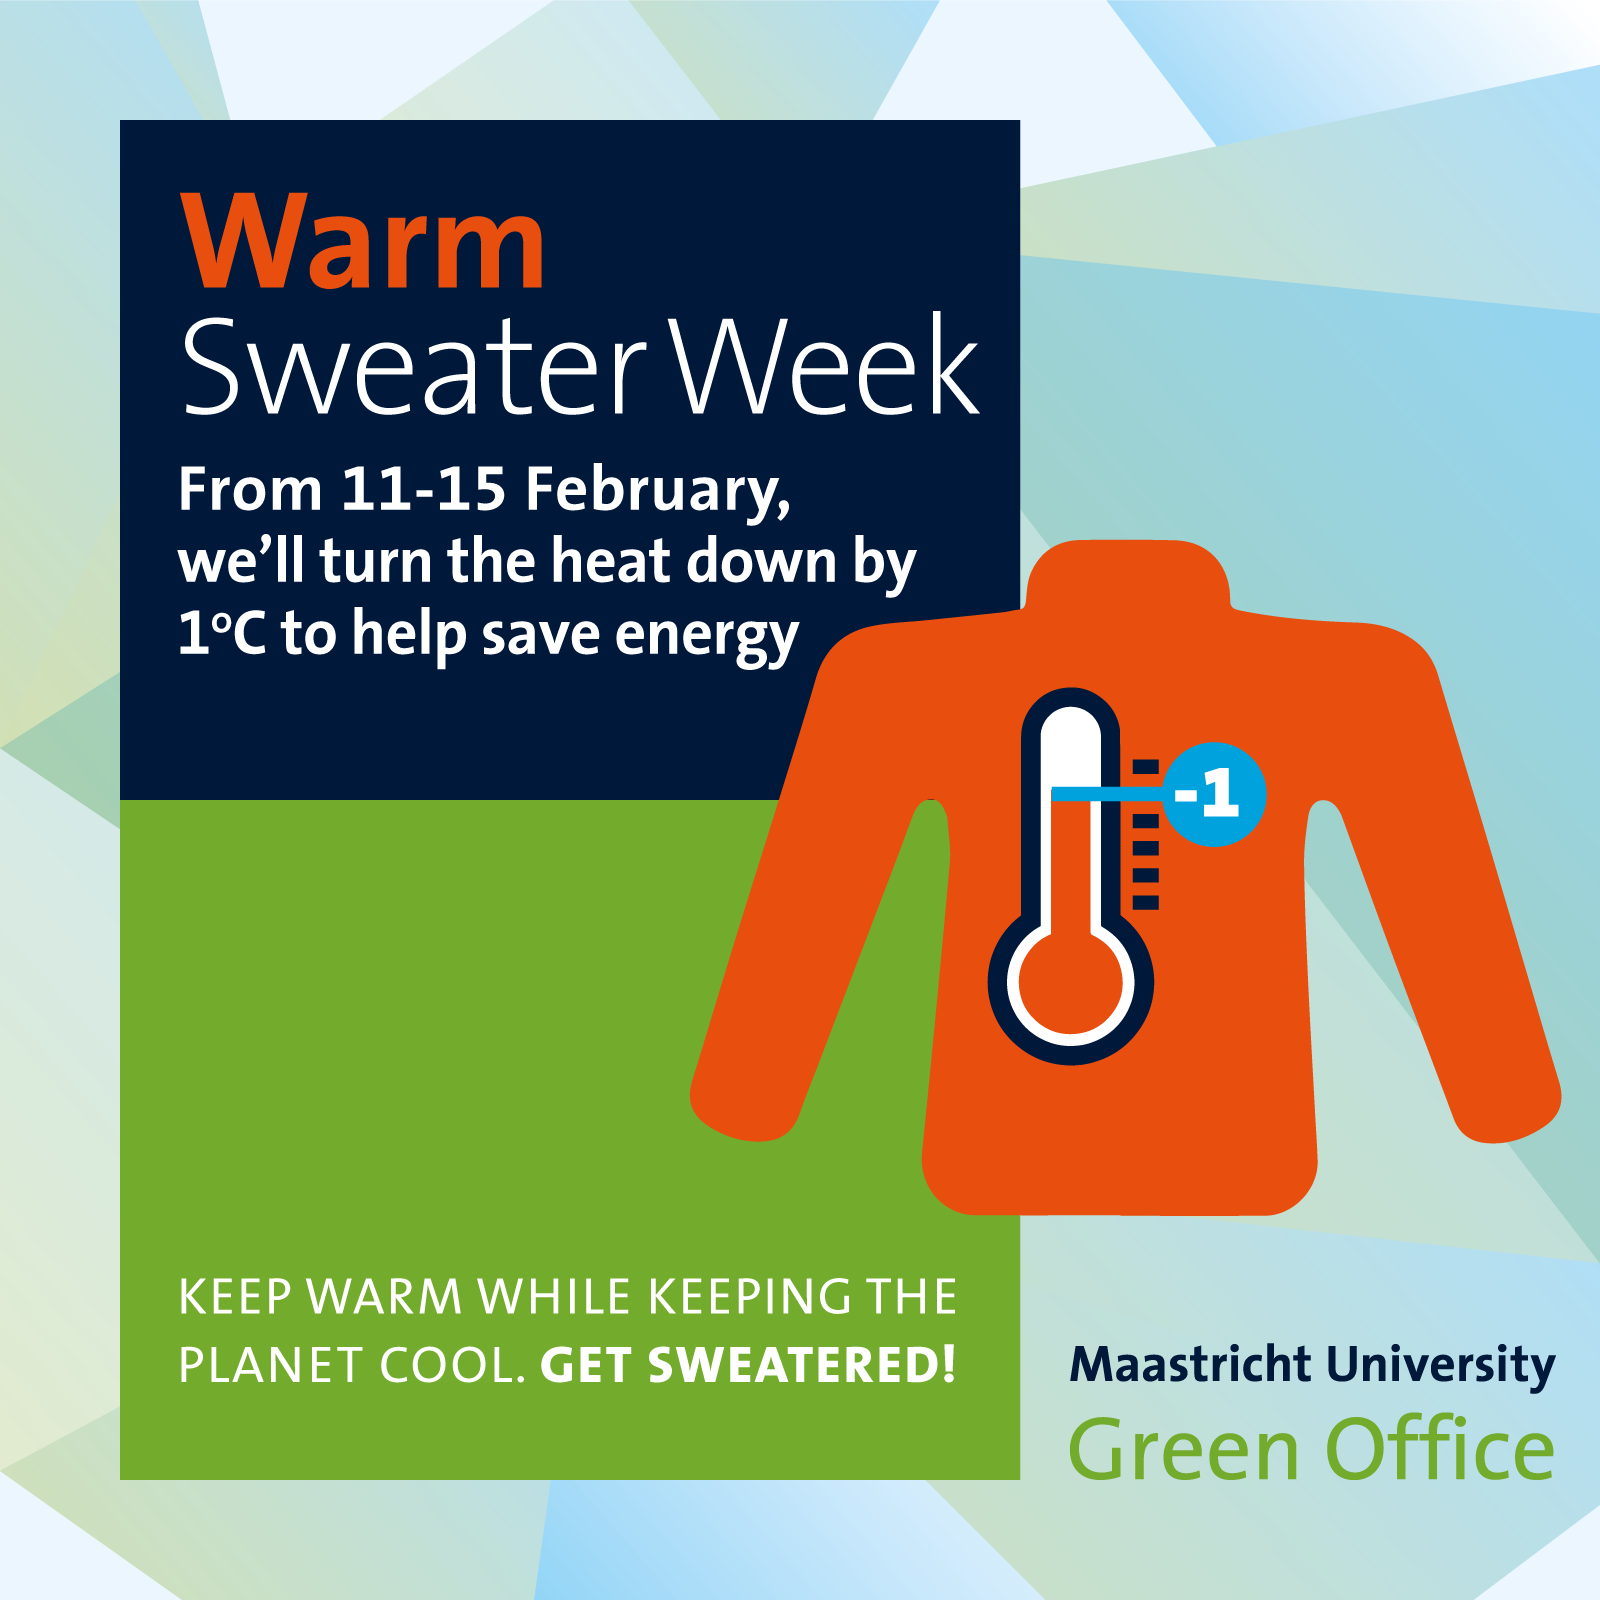 UM Warm Sweater week 2019